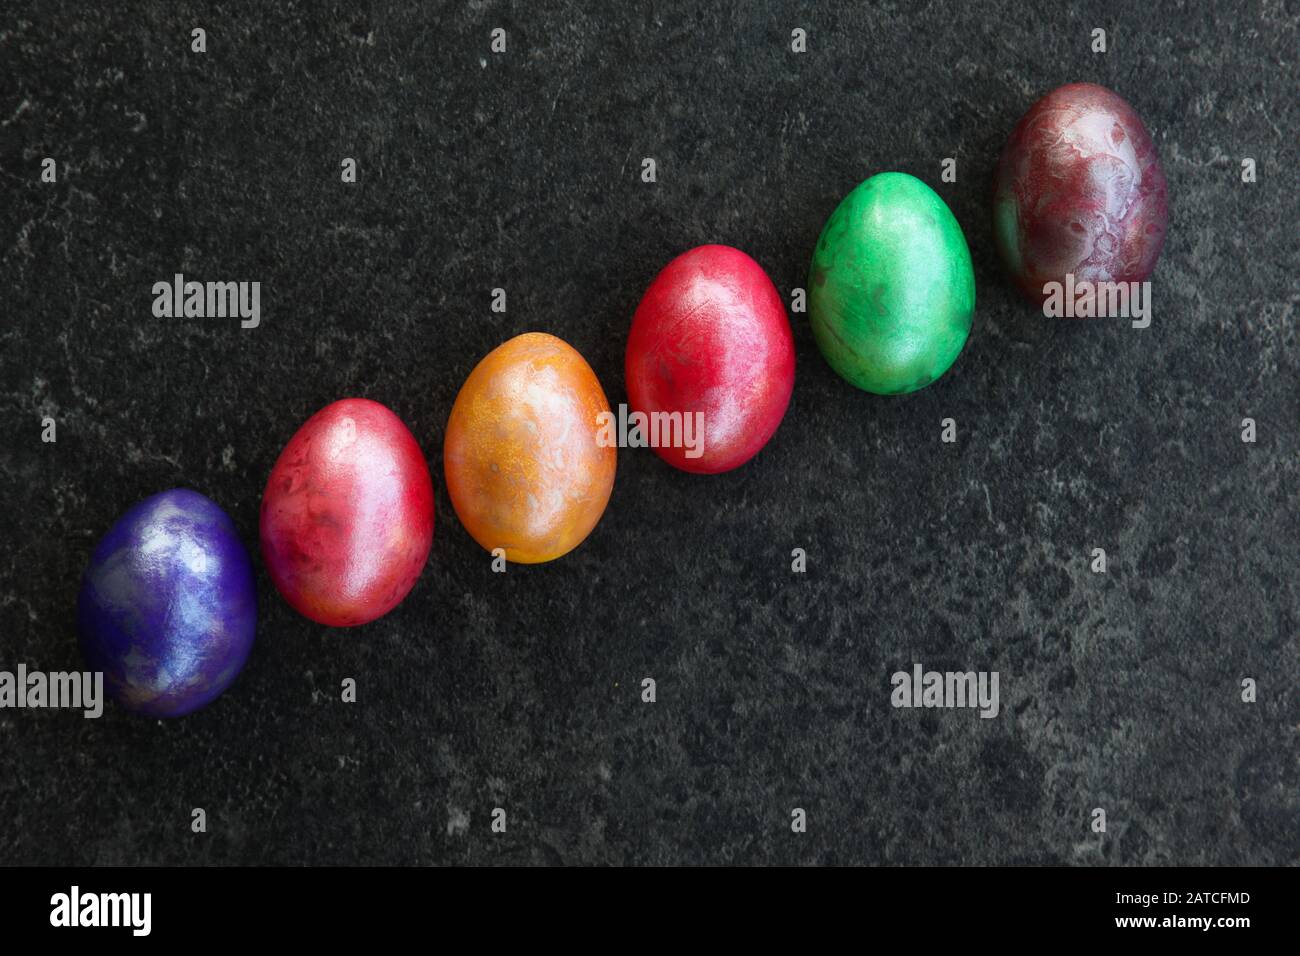 Six œufs colorés en diagonale sur la surface anthracite Banque D'Images